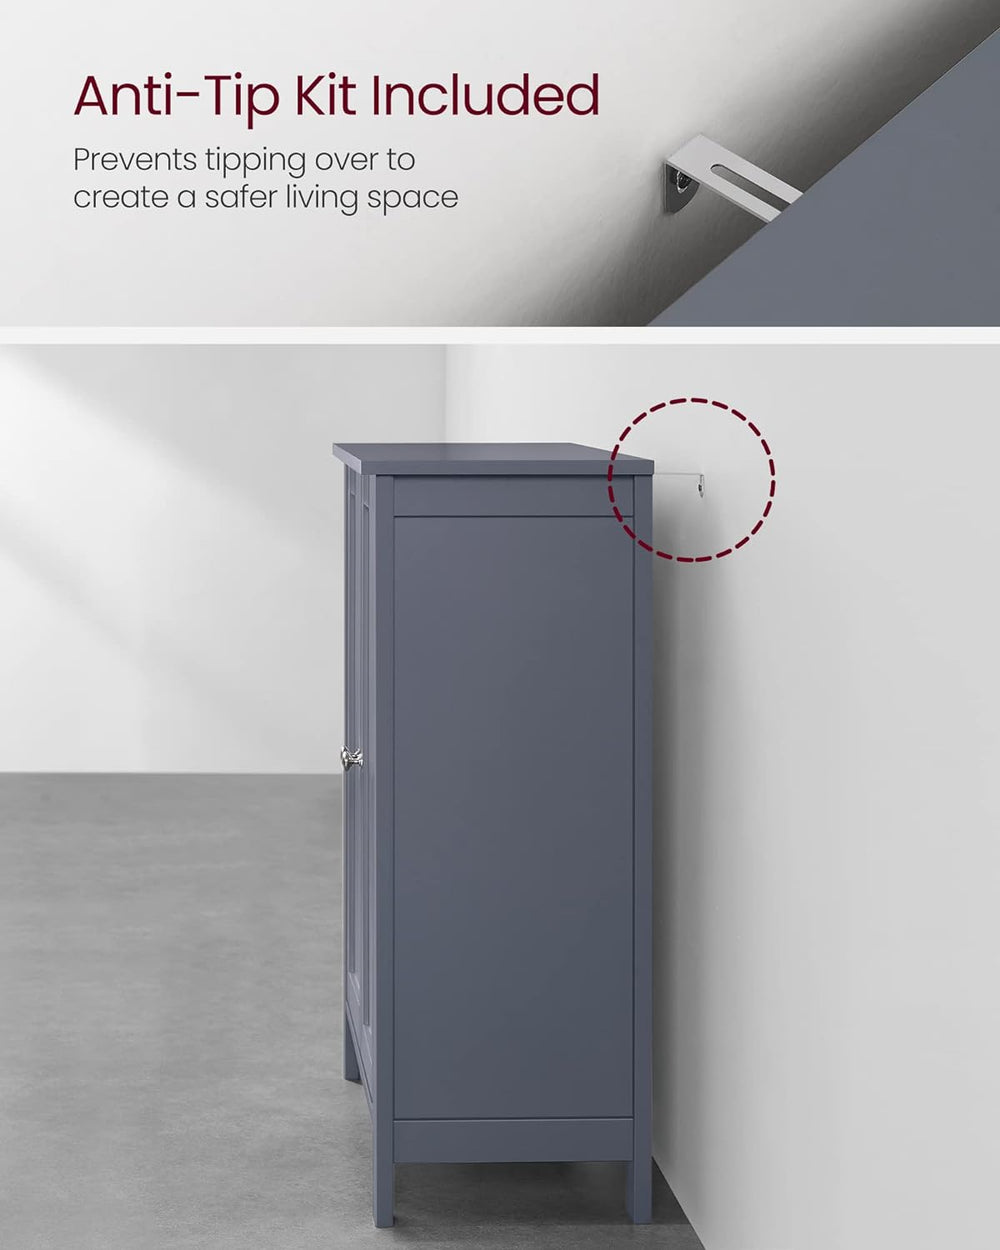 VASAGLE Bathroom Kitchen Cupboard Storage Organiser 2 Door Floor Cabinet - Gray